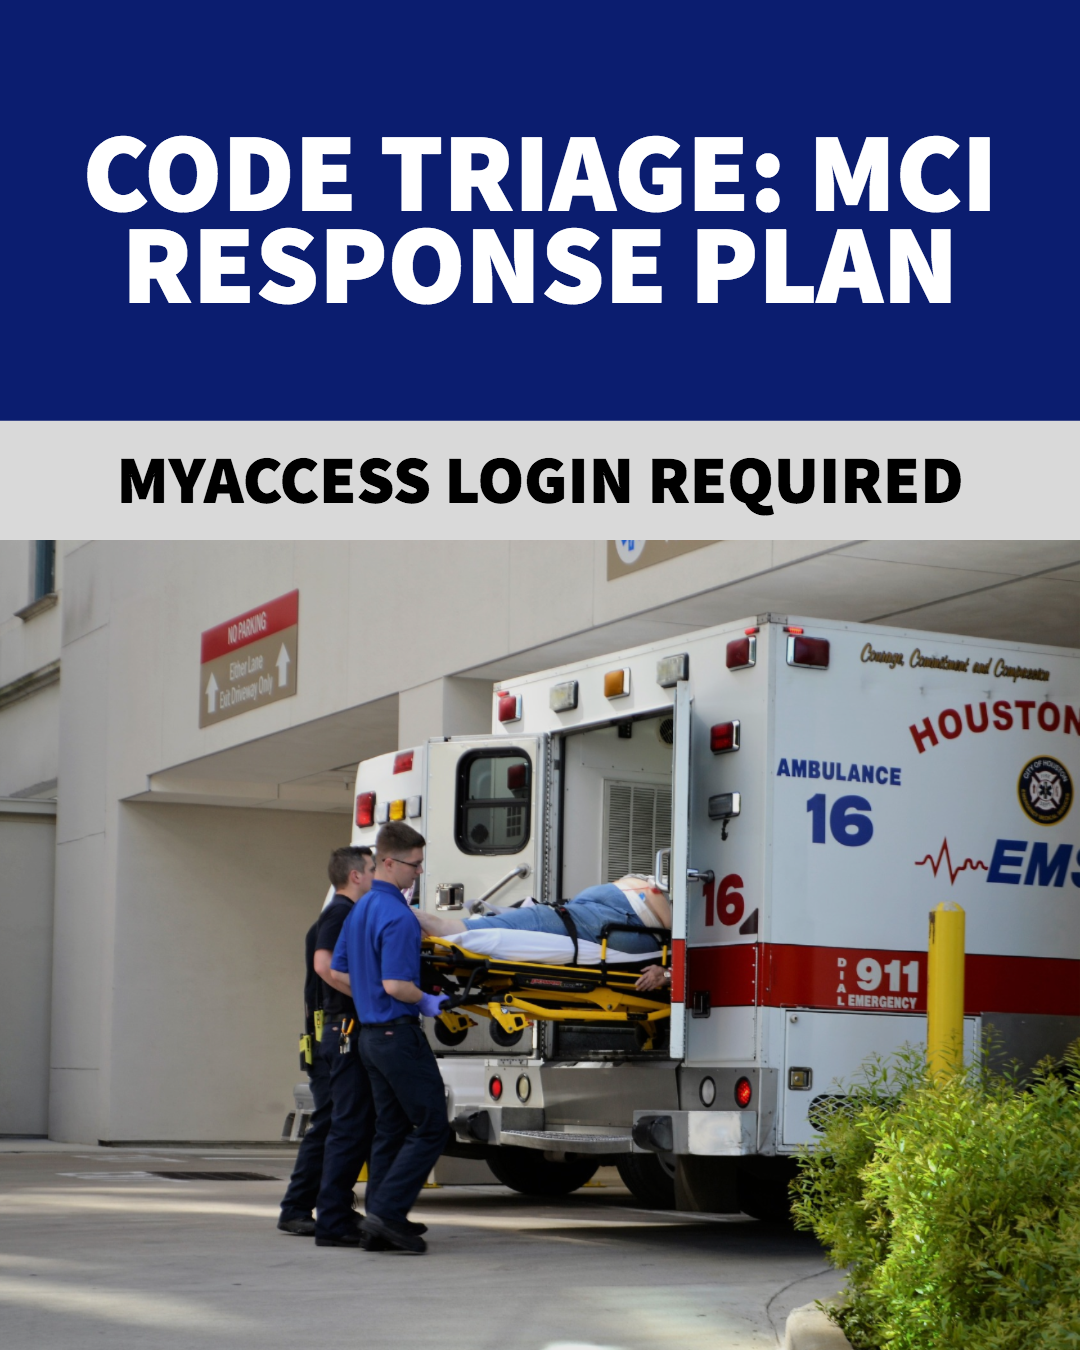 Code Triage Response Plan